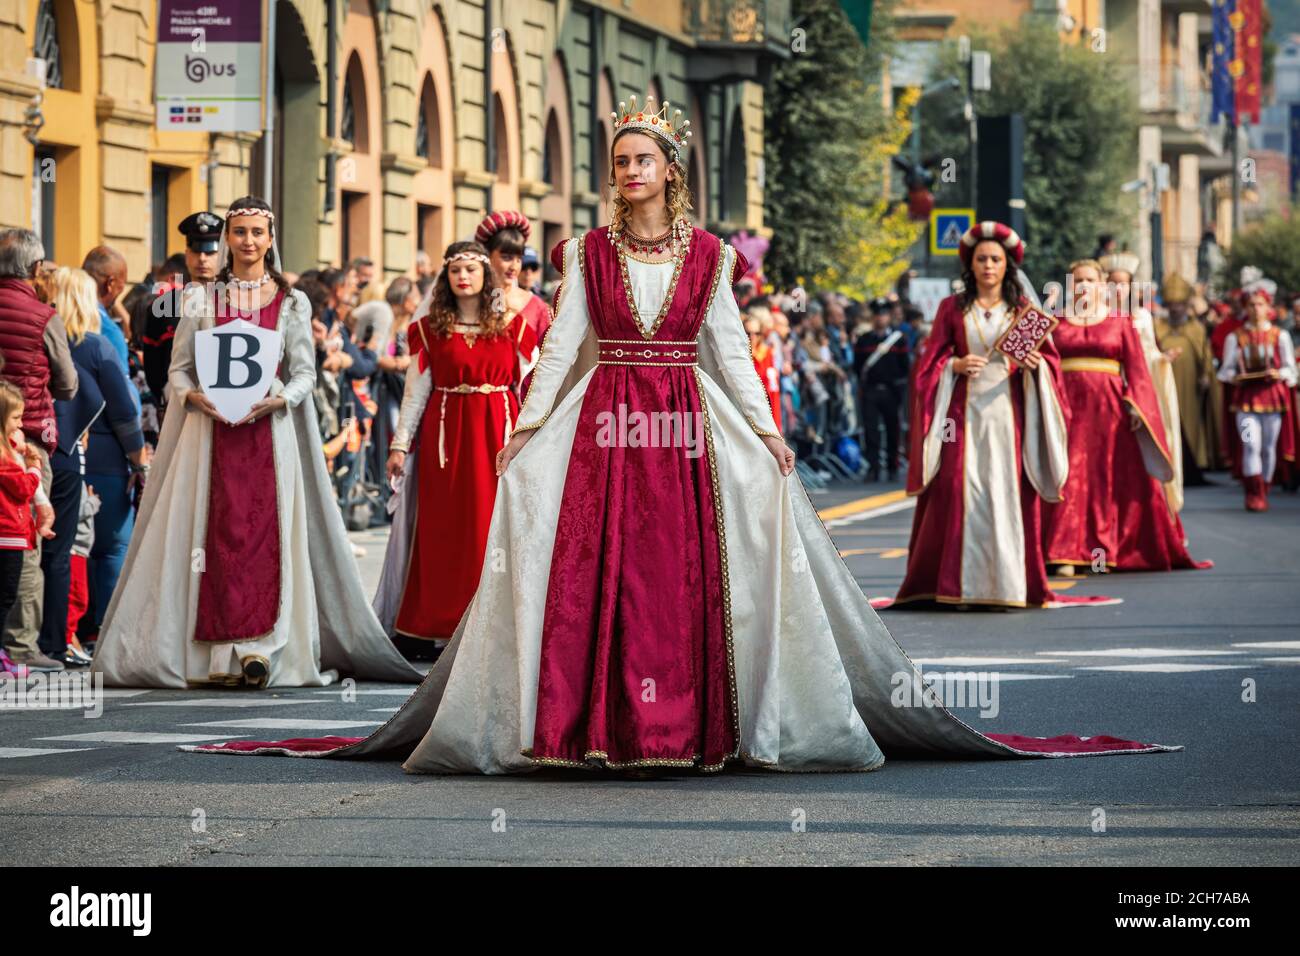 Partecipanti a abiti storici sulla Parata medievale - parte tradizionale delle celebrazioni durante l'annuale festival del Tartufo Bianco ad Alba, Italia. Foto Stock